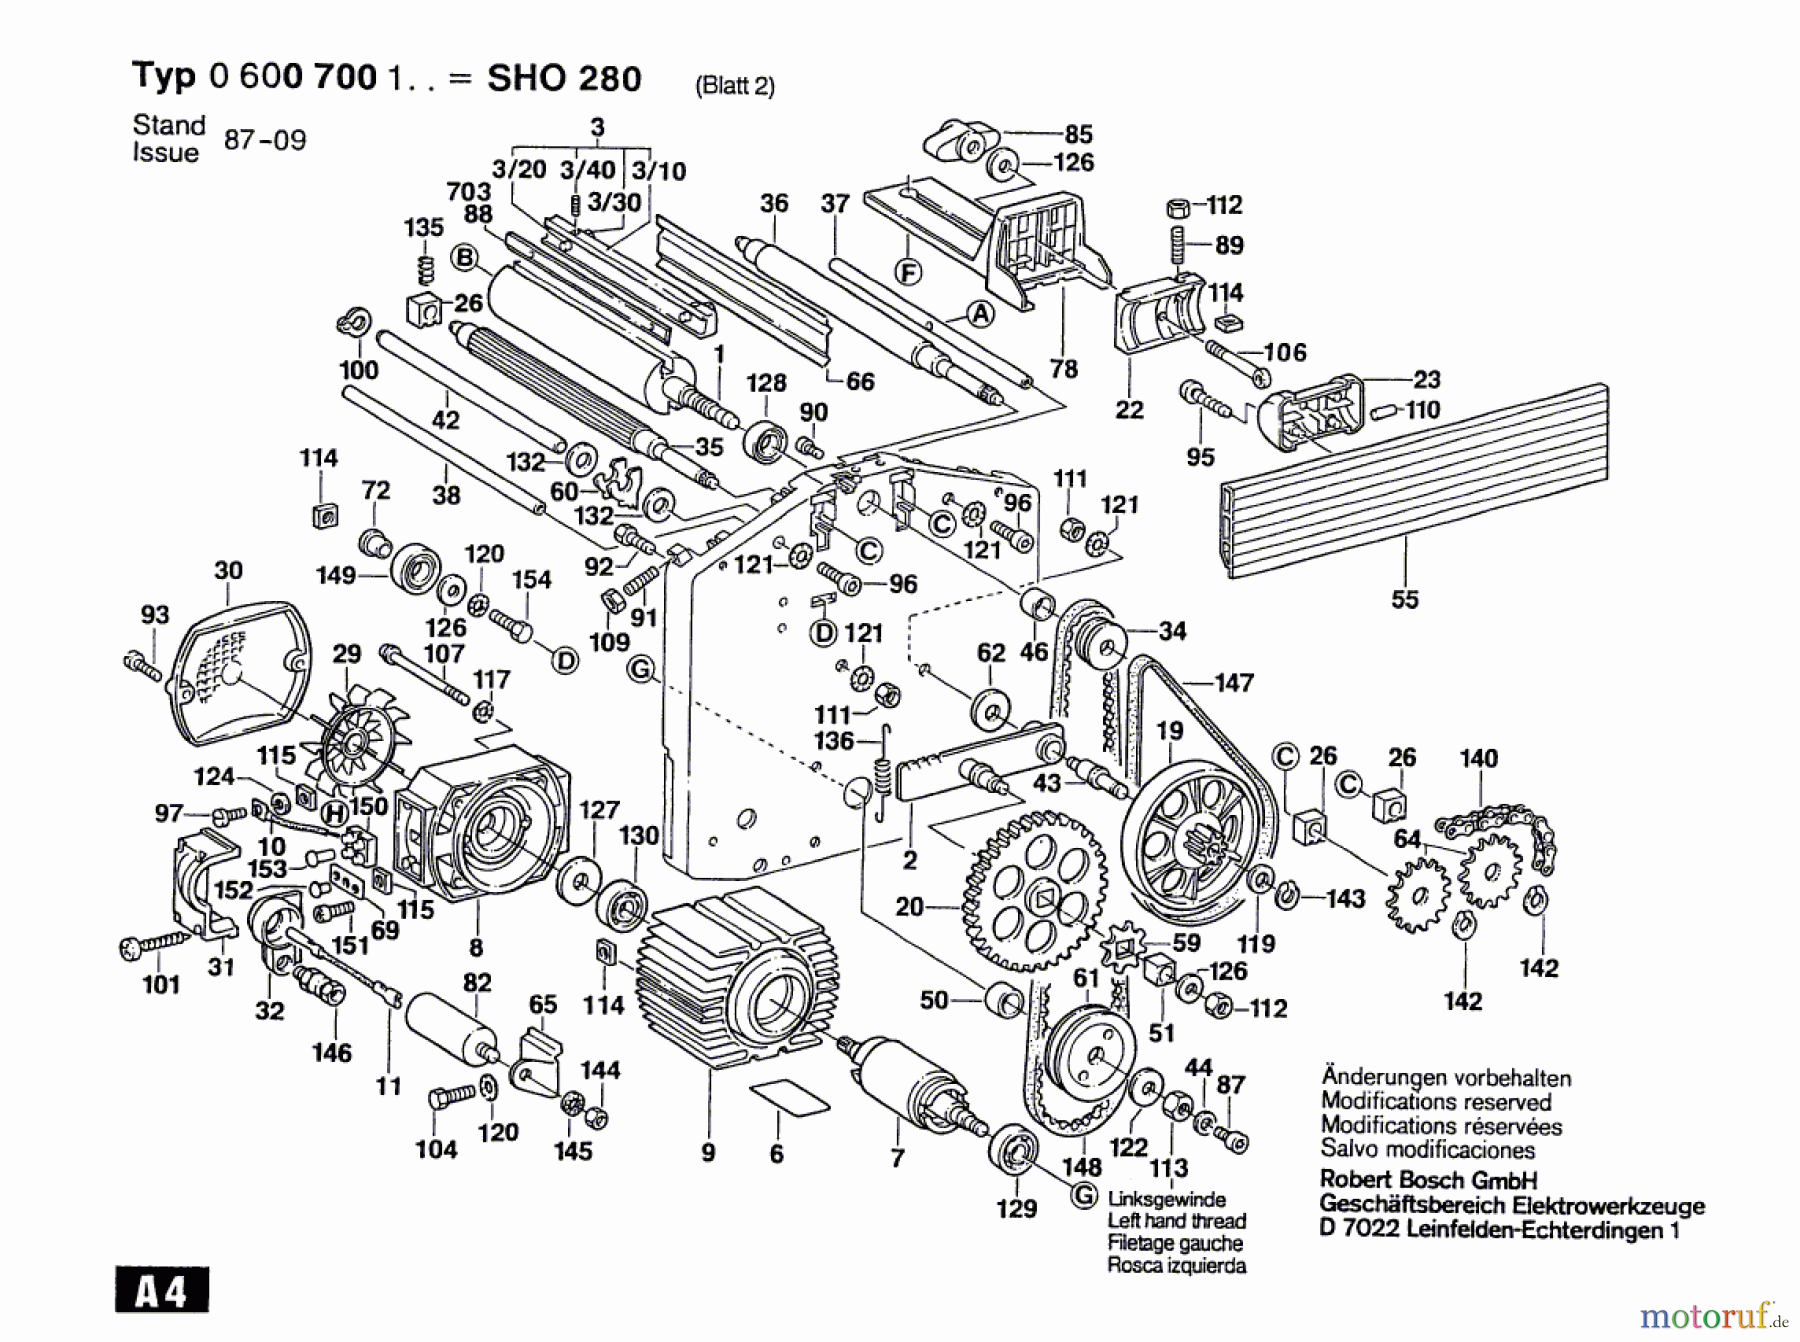  Bosch Werkzeug Abricht/Dickenhobel SHO 280 Seite 2